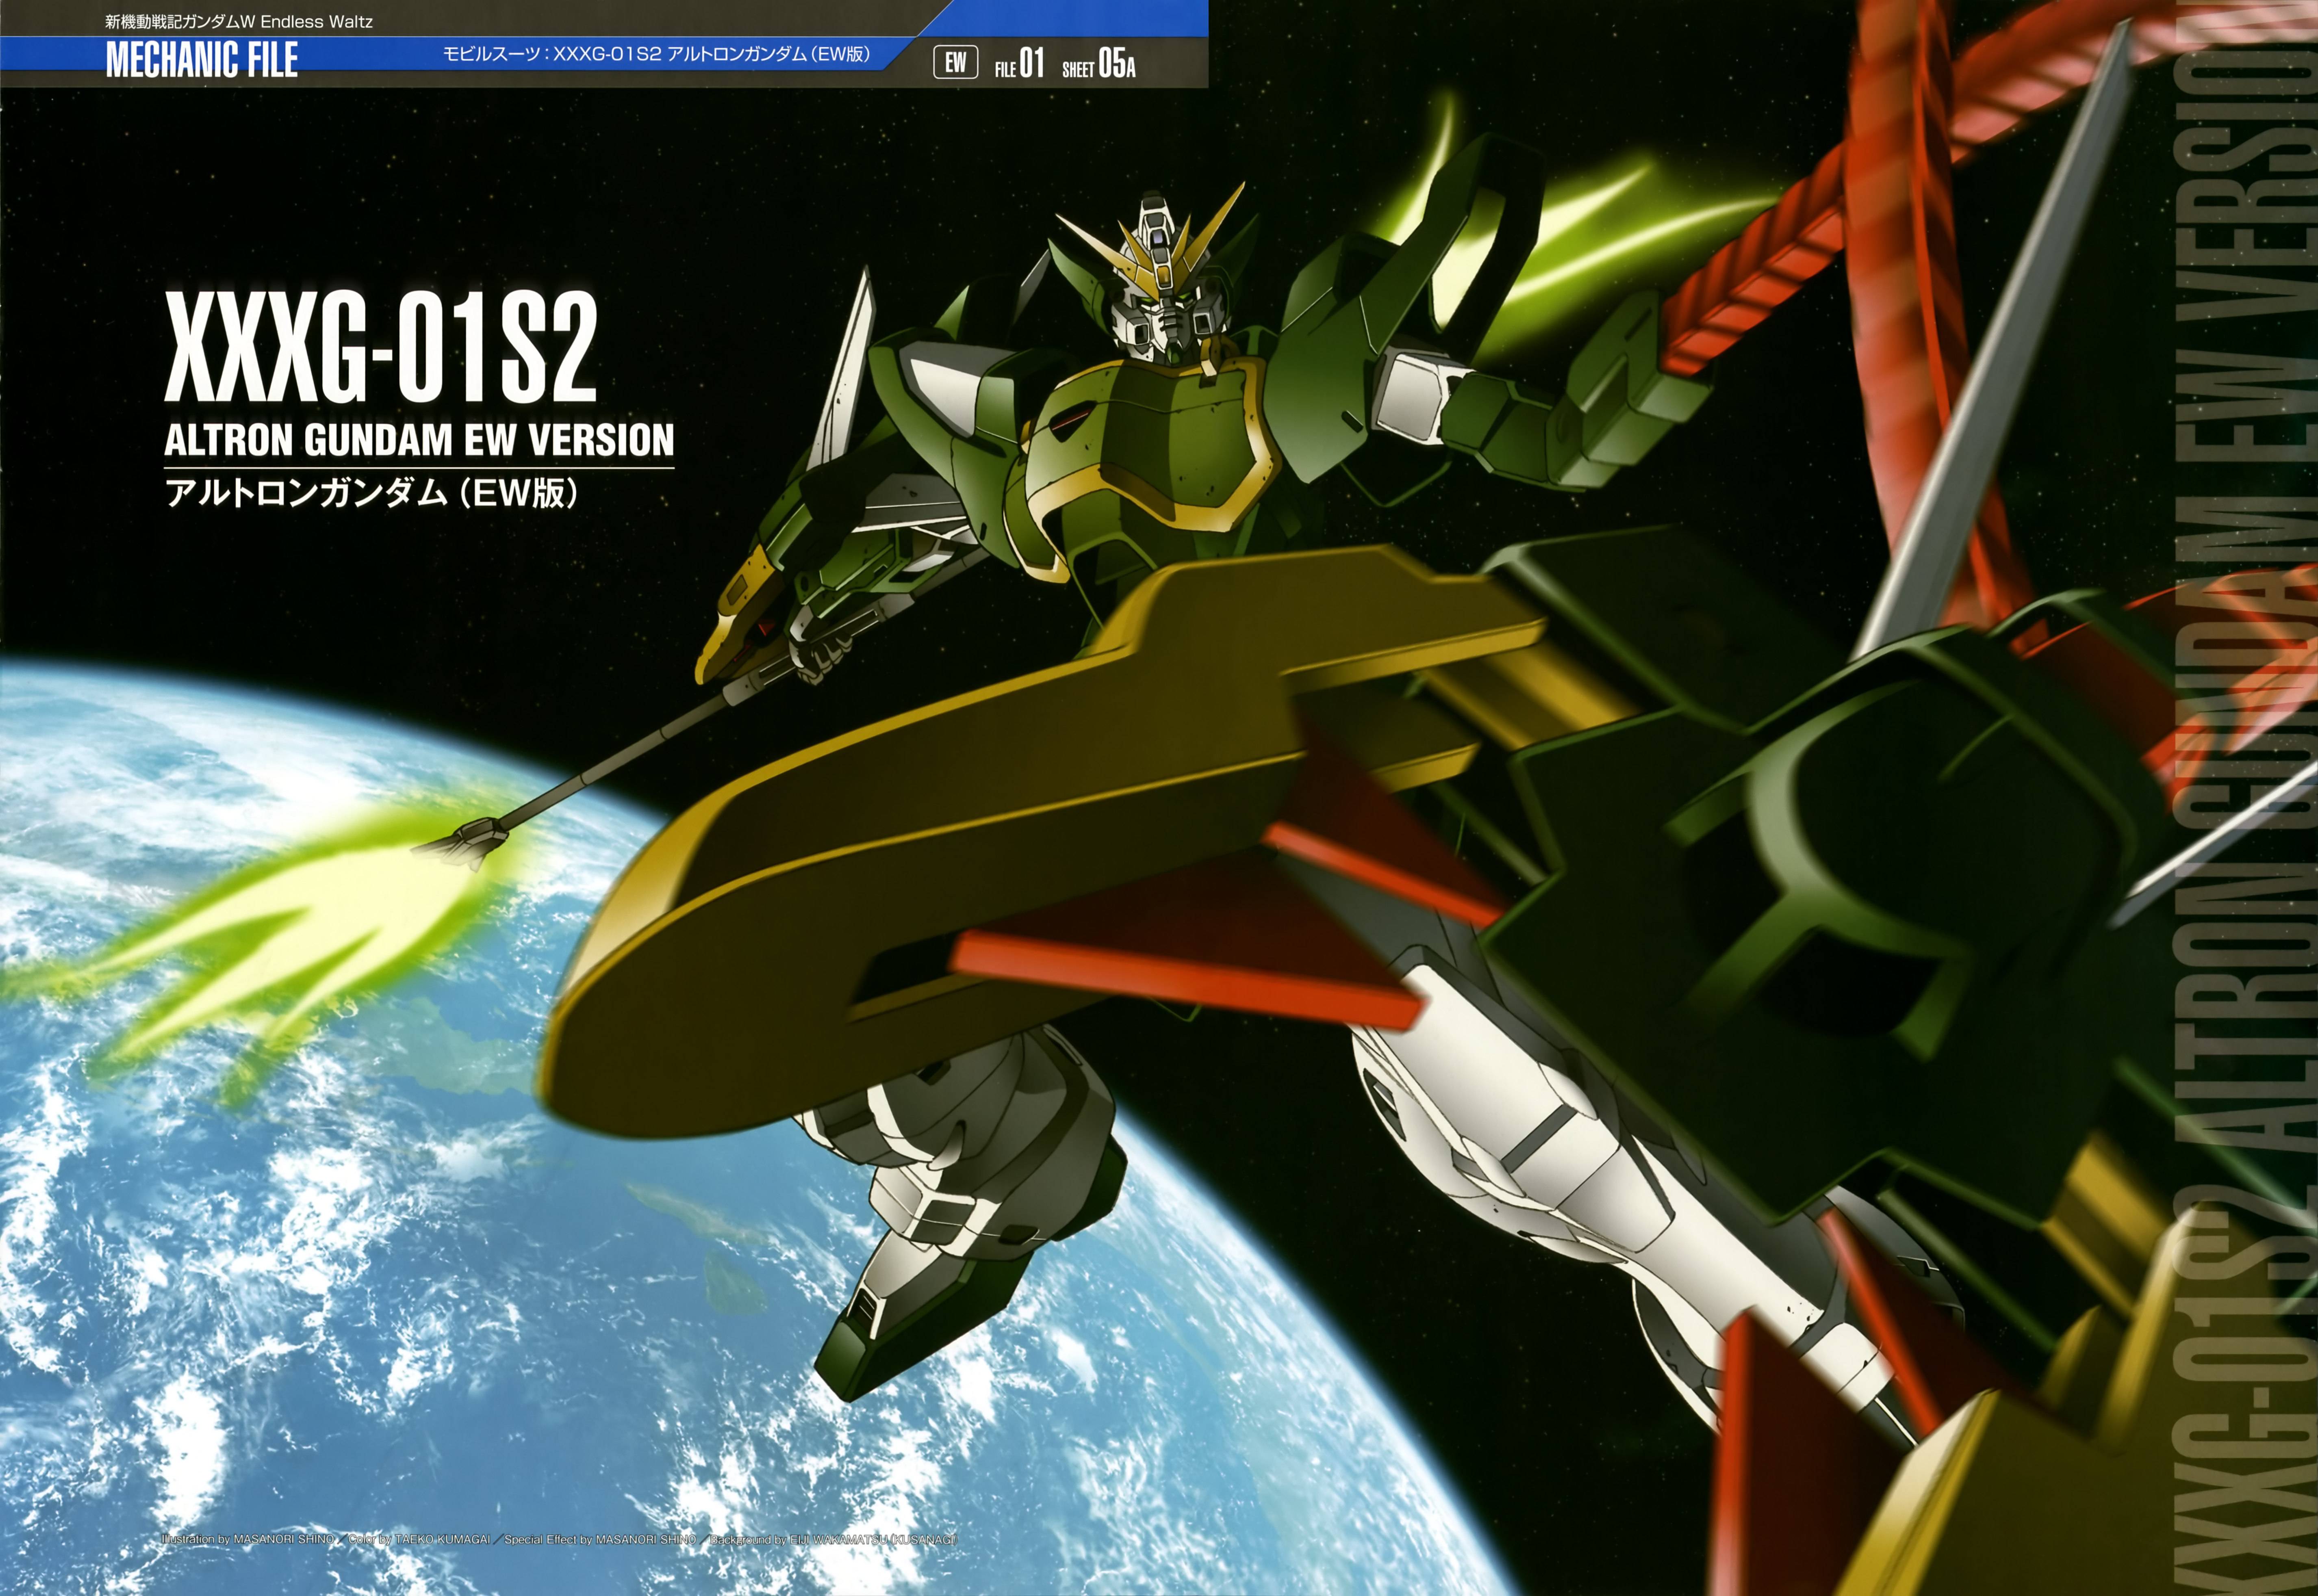 Anime Gundam Mechs Super Robot Wars Mobile Suit Gundam Wing Altron Gundam Artwork Digital Art Offici 5704x3928